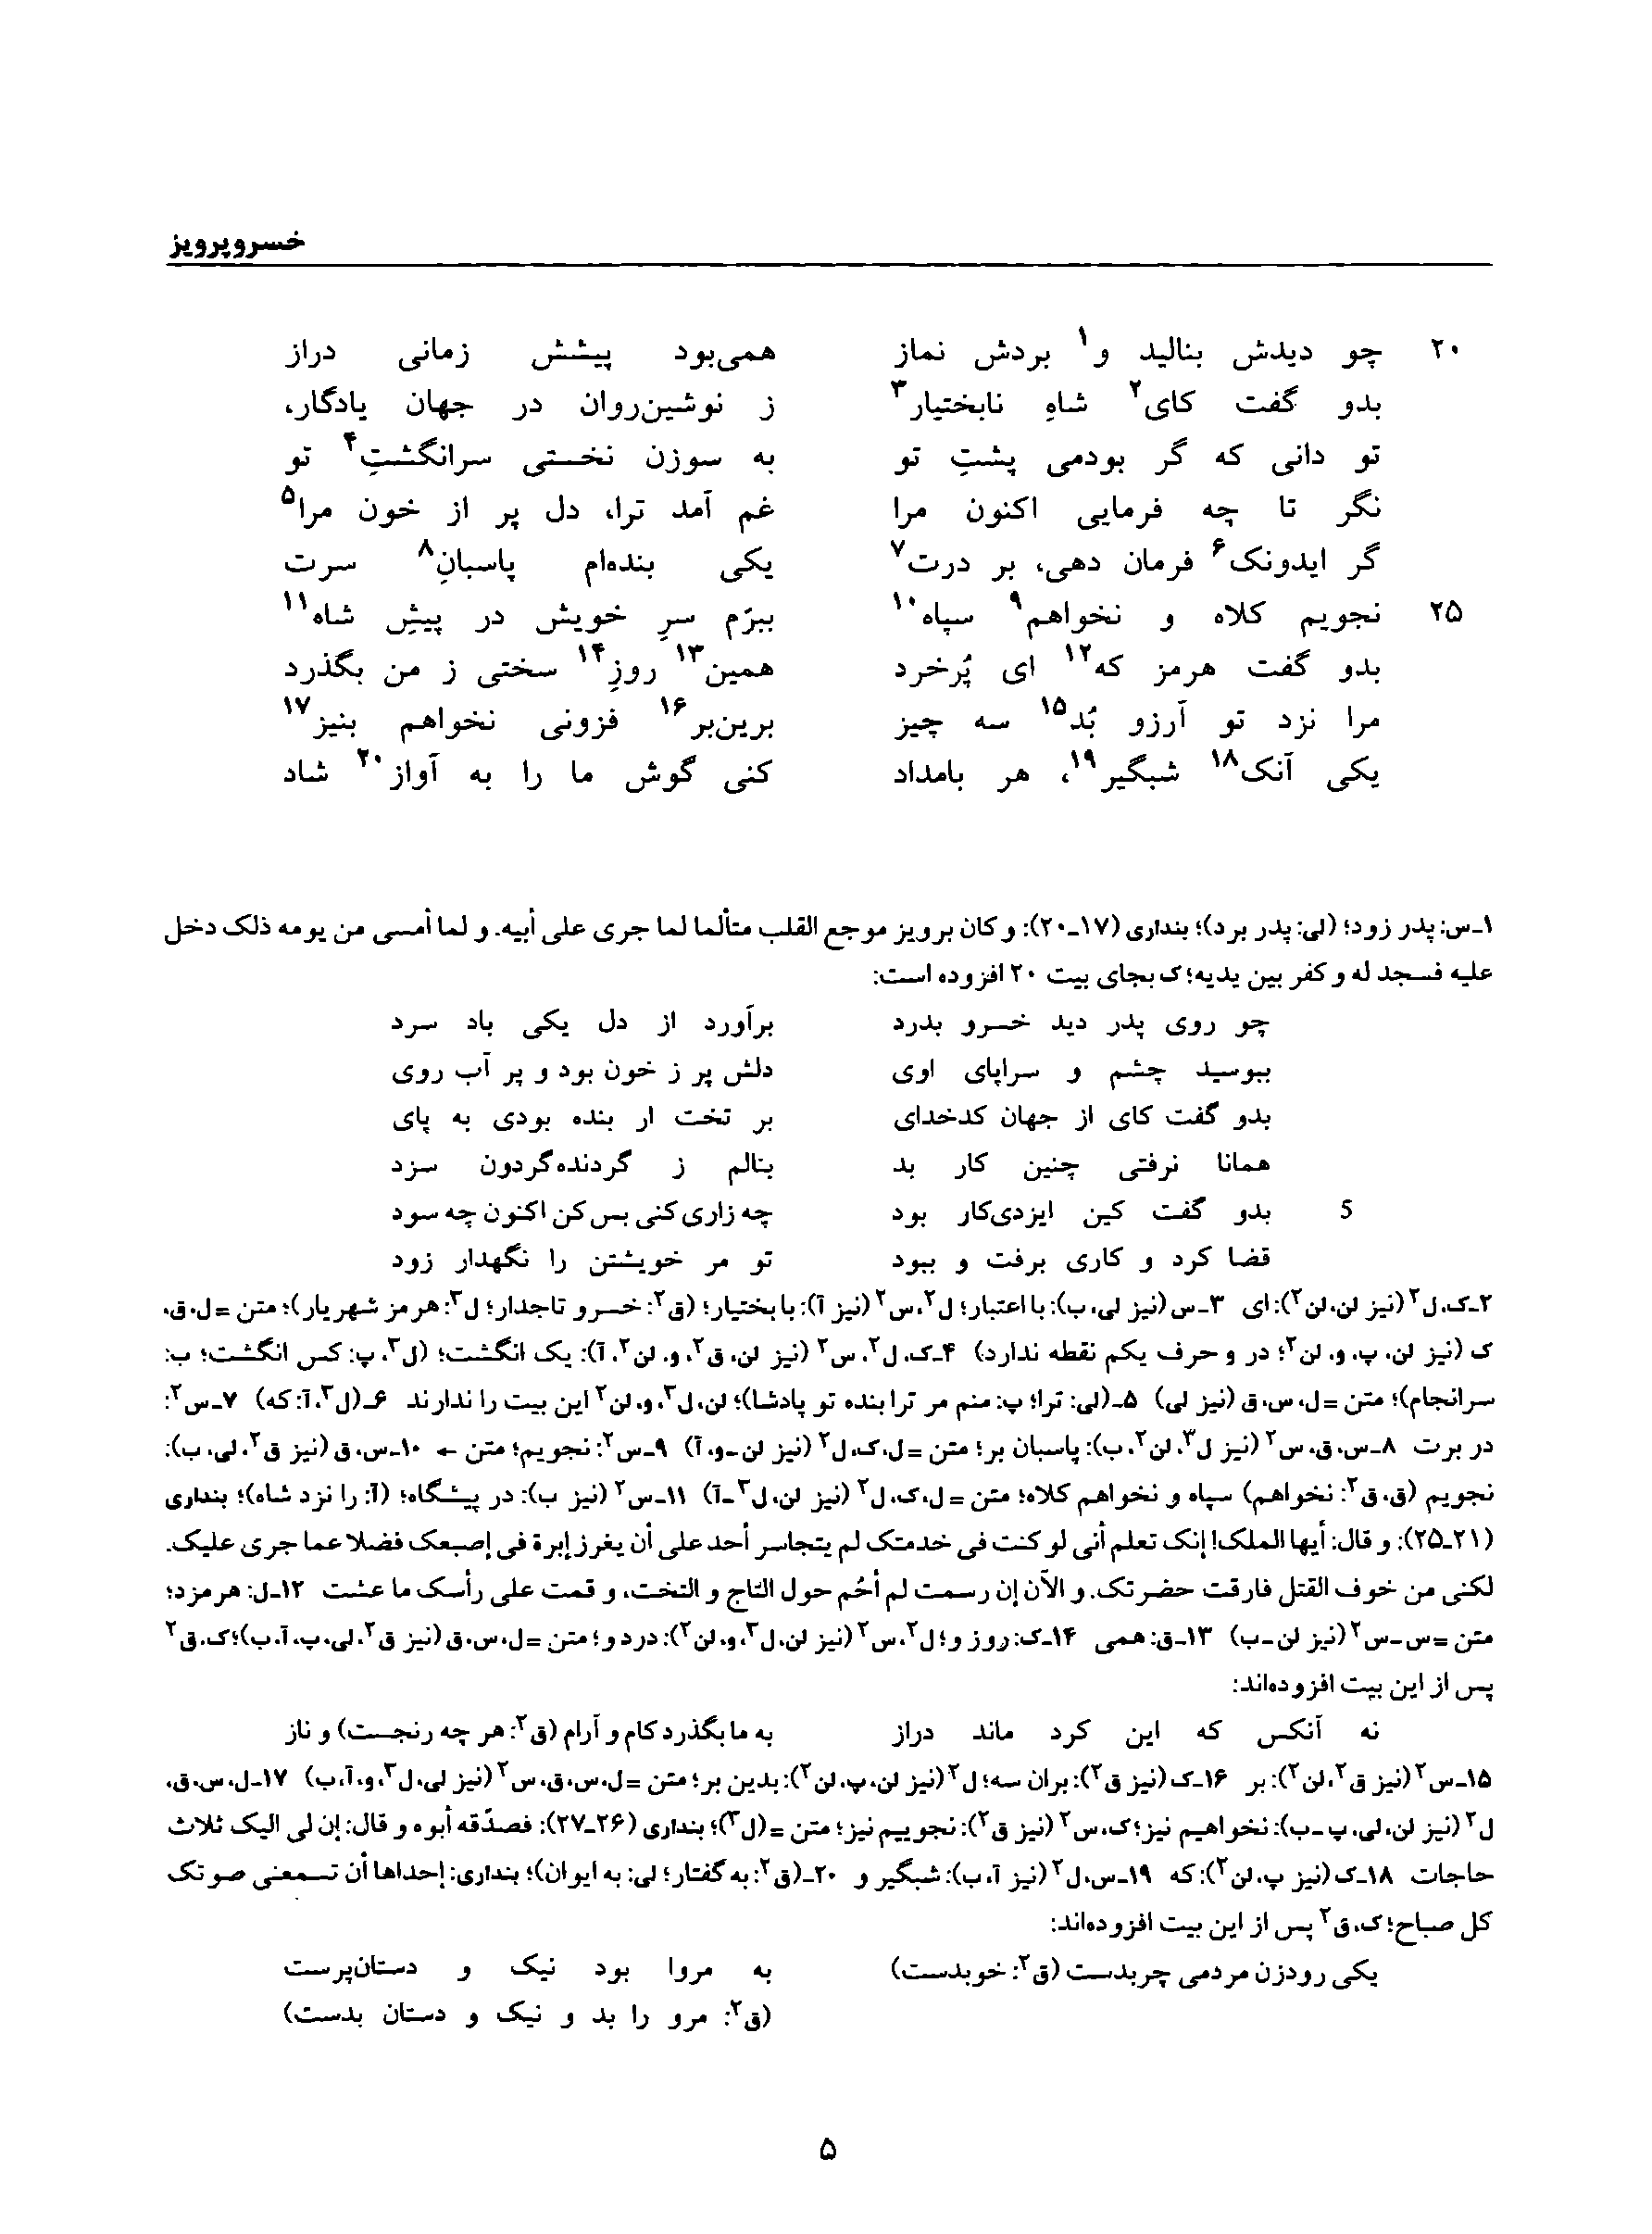 vol. 8, p. 5